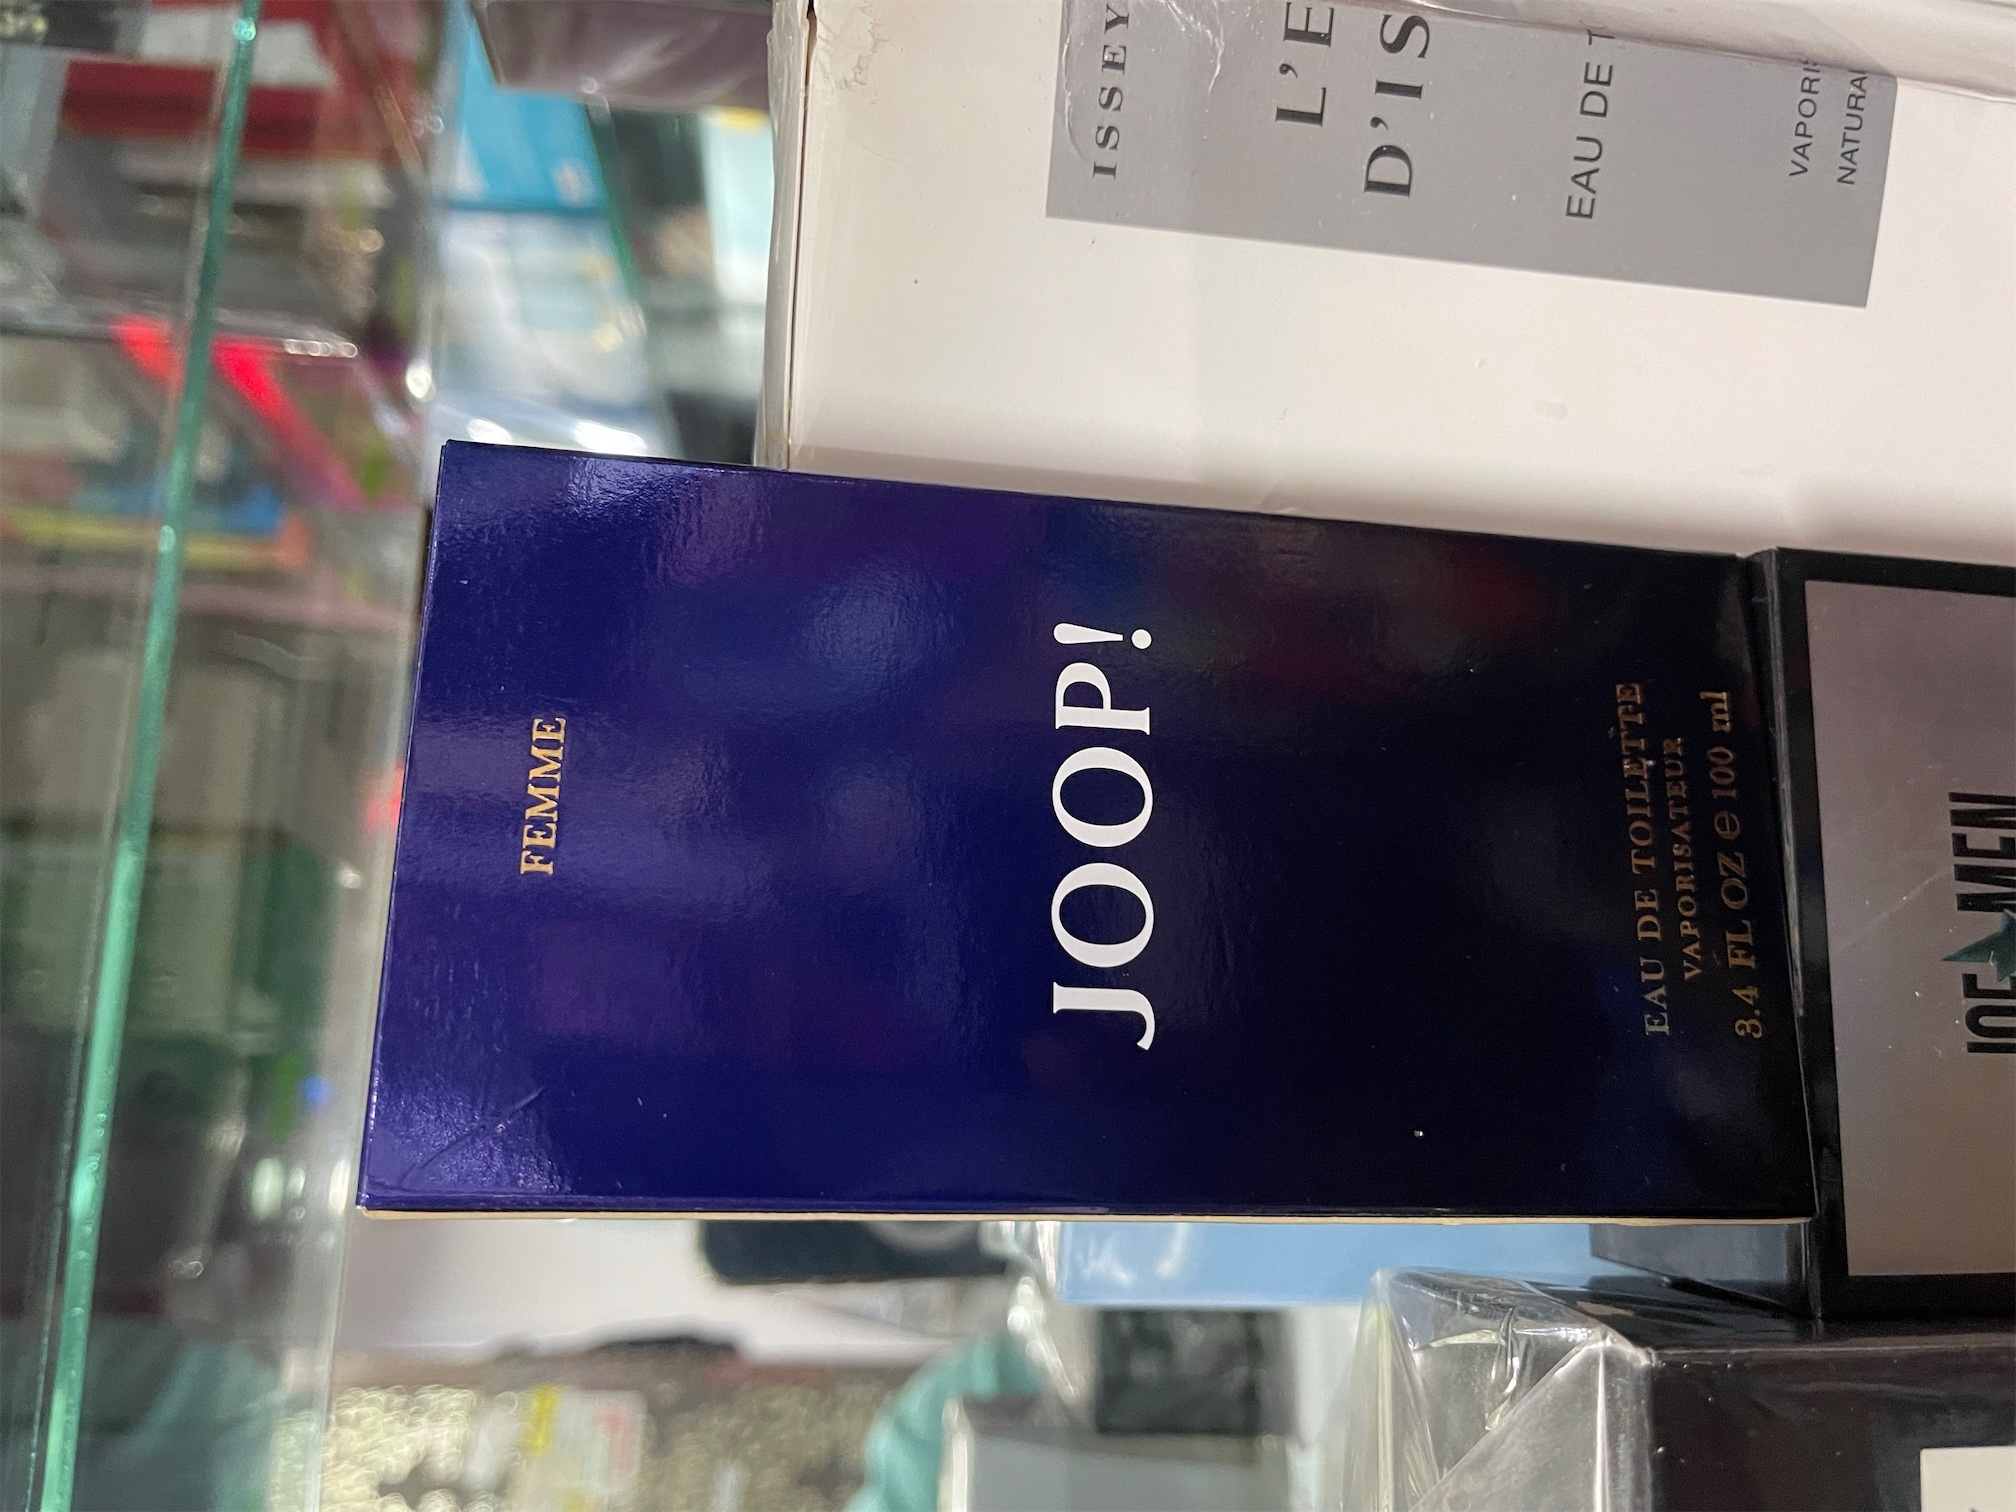 salud y belleza - Perfume Joop Mujer. Original. AL POR MAYOR Y AL DETALLE 0